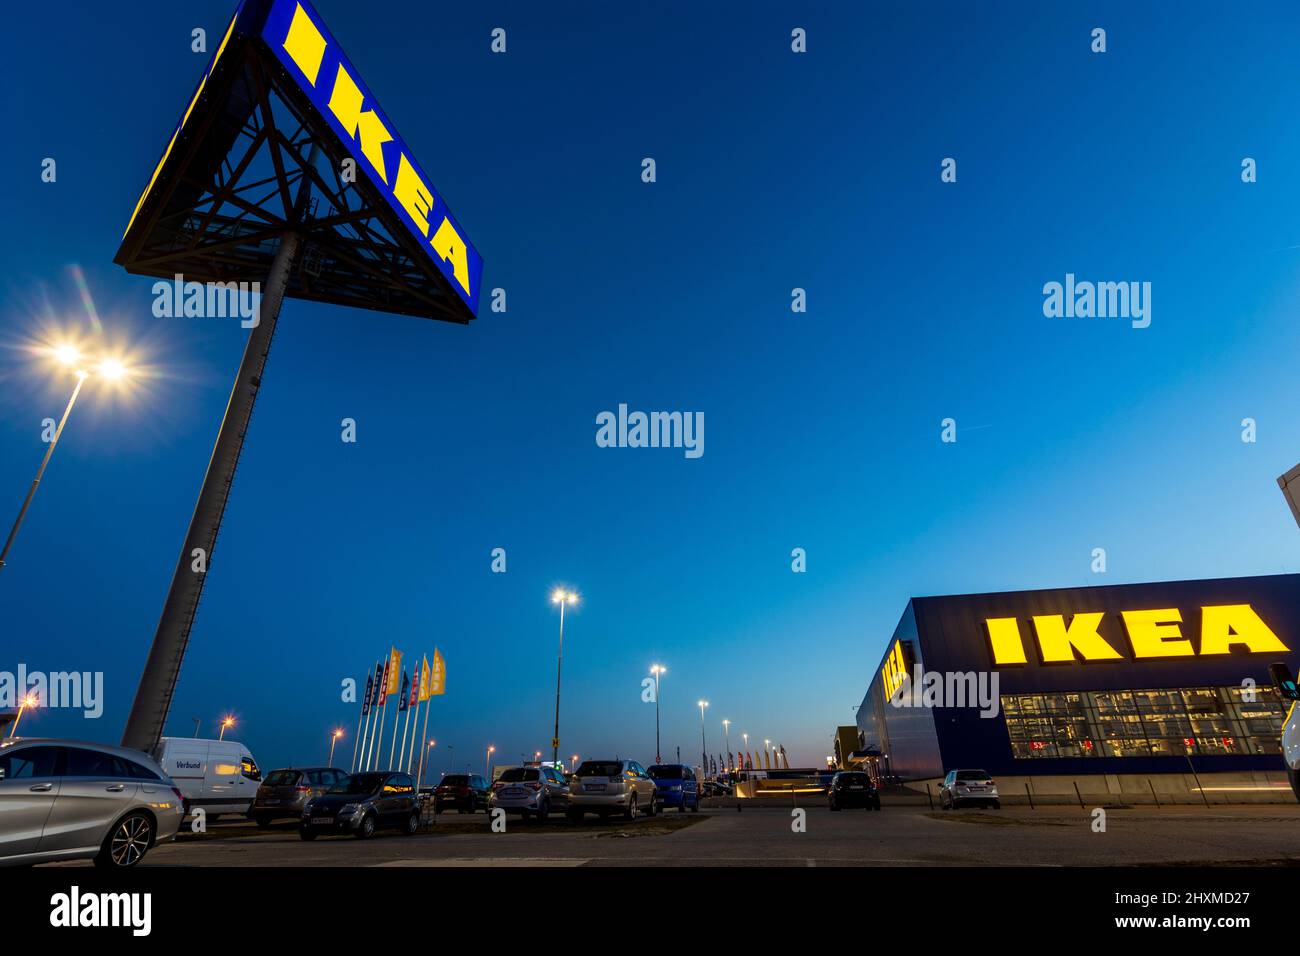 Wien, Wien: IKEA Möbelhaus im Jahr 22. Donaustadt, Wien, Österreich  Stockfotografie - Alamy